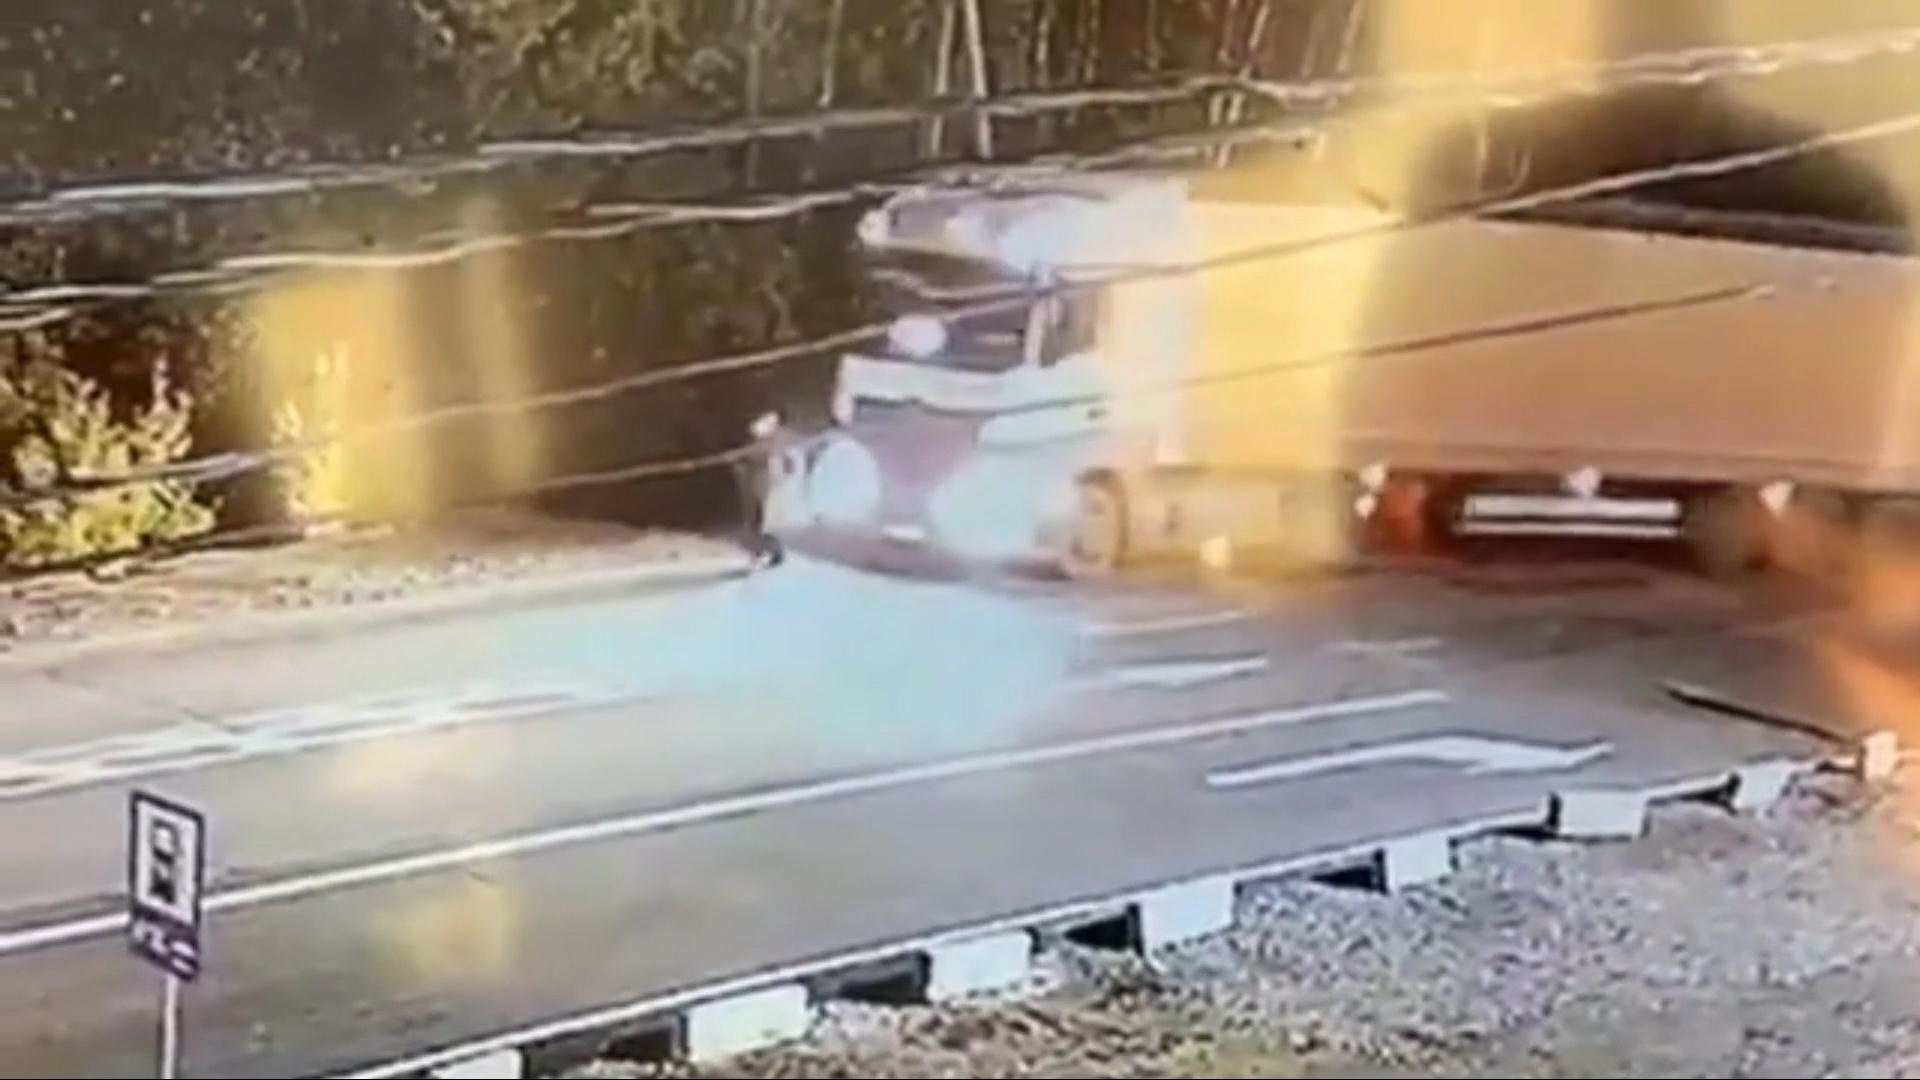 Видеорегистратор запечатлел момент смертельного дтп на трассе м 5